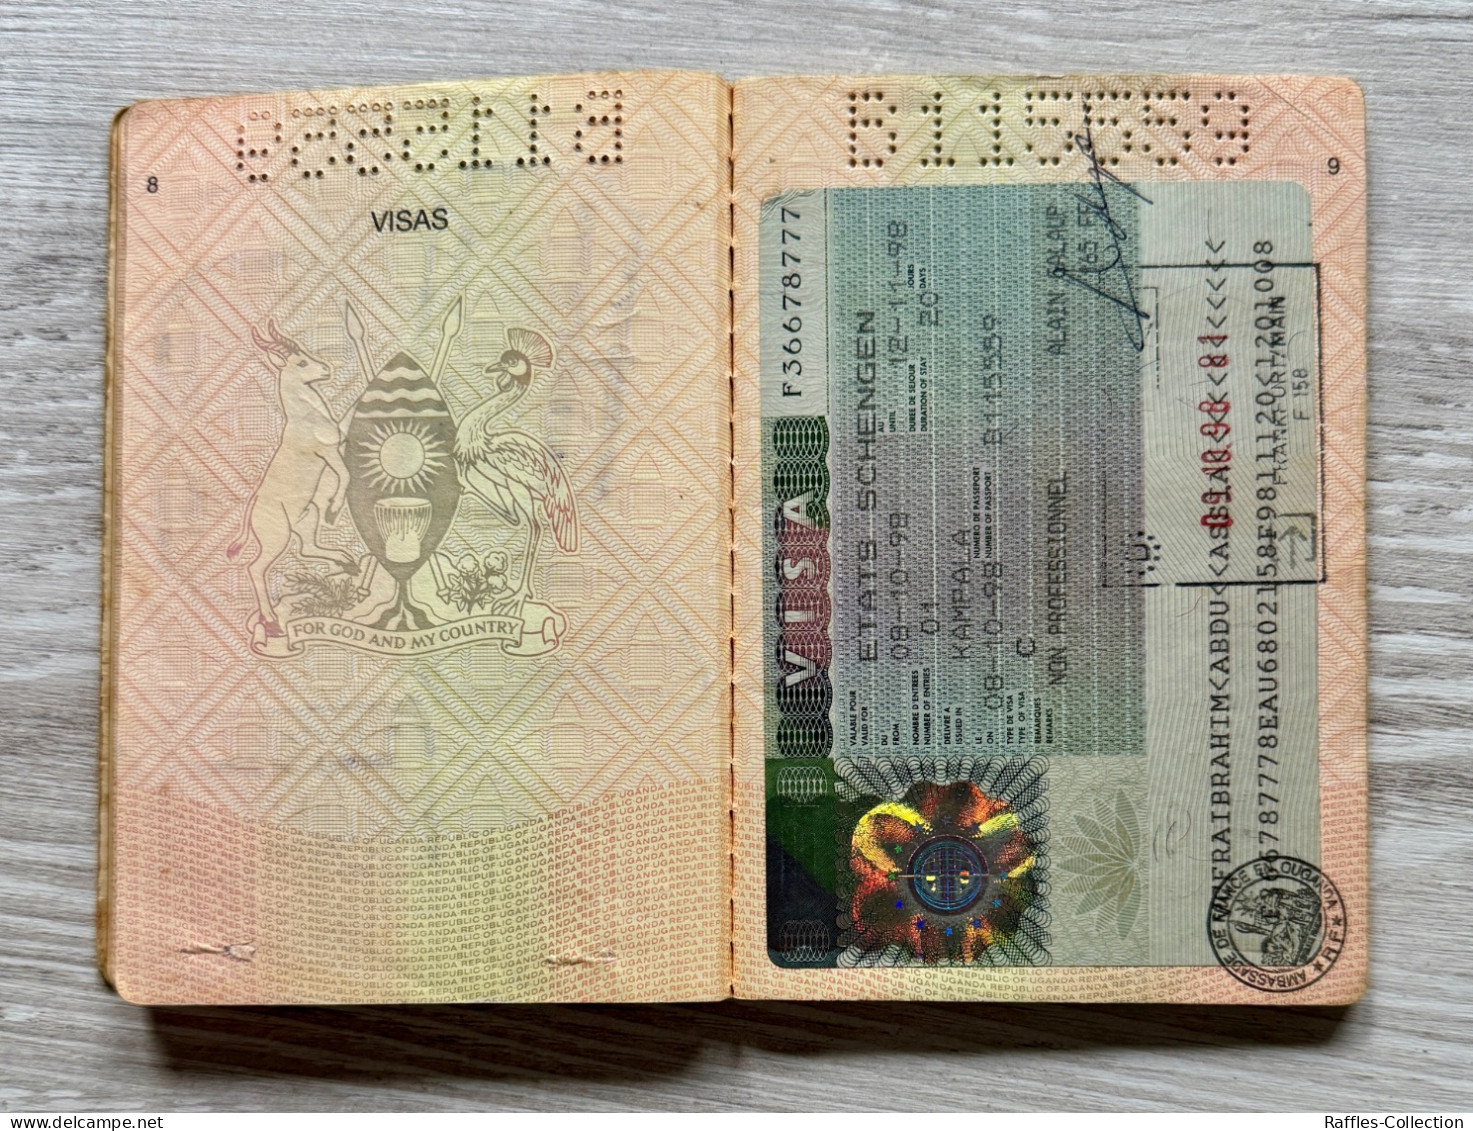 Uganda passport passeport reisepass pasaporte passaporto